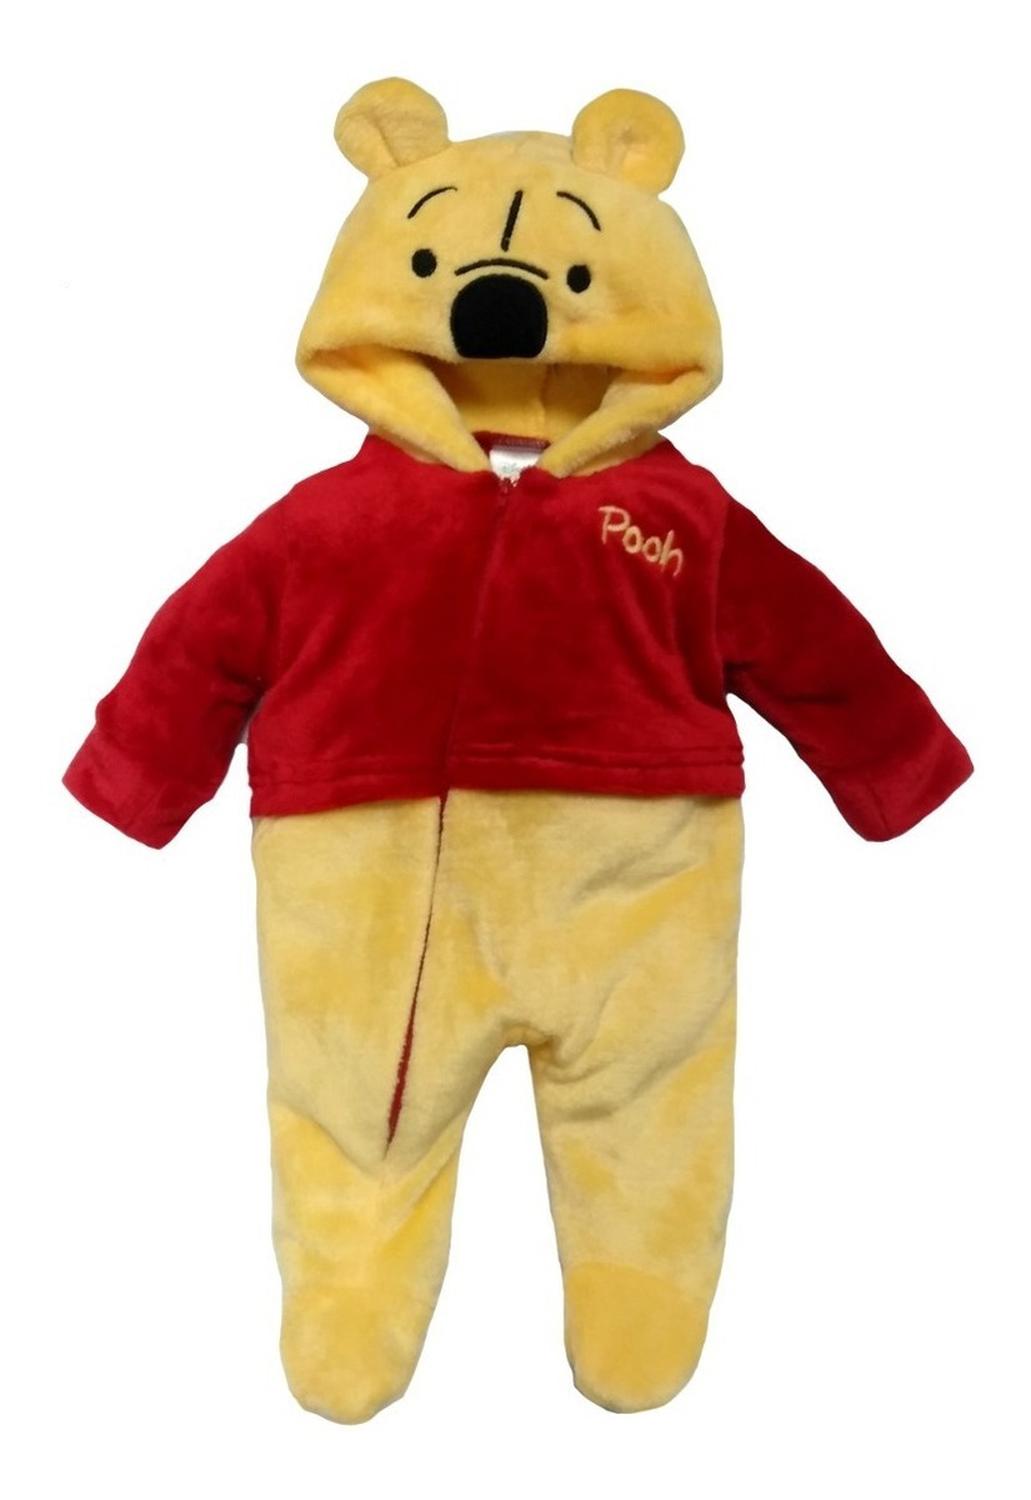 Kit 3 Mamelucos Disney para Bebé con Gorro Bordado Winnie Pooh, Tigger, Eeyore